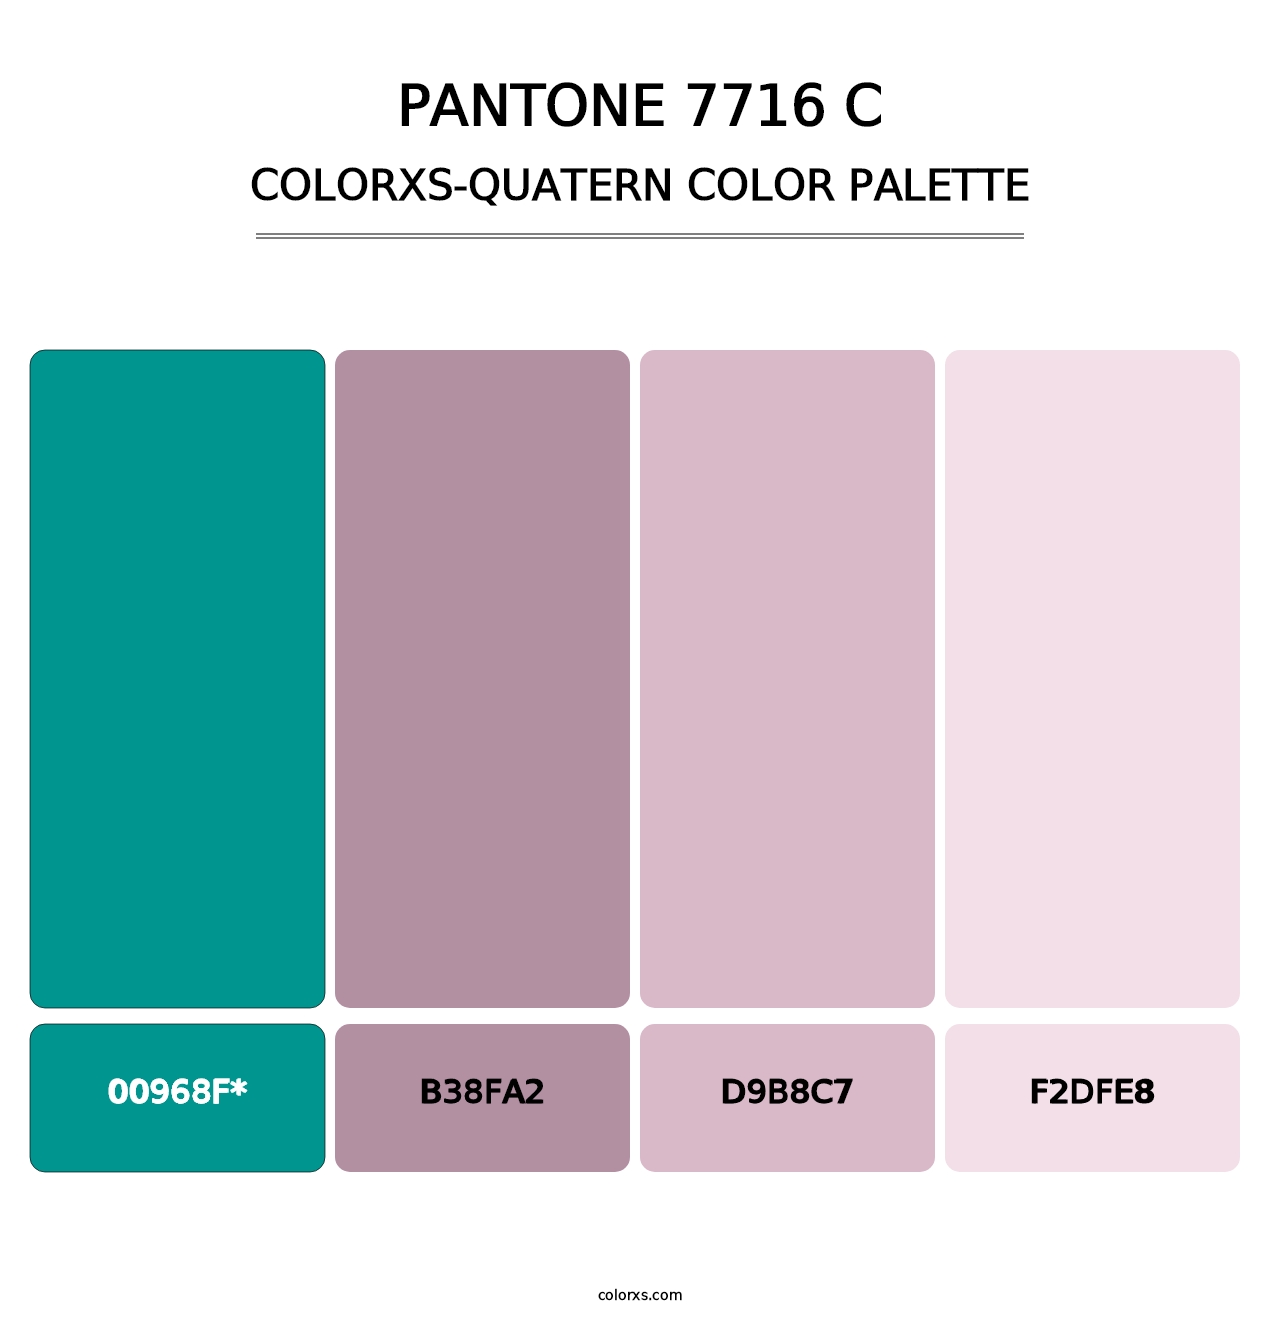 PANTONE 7716 C - Colorxs Quatern Palette